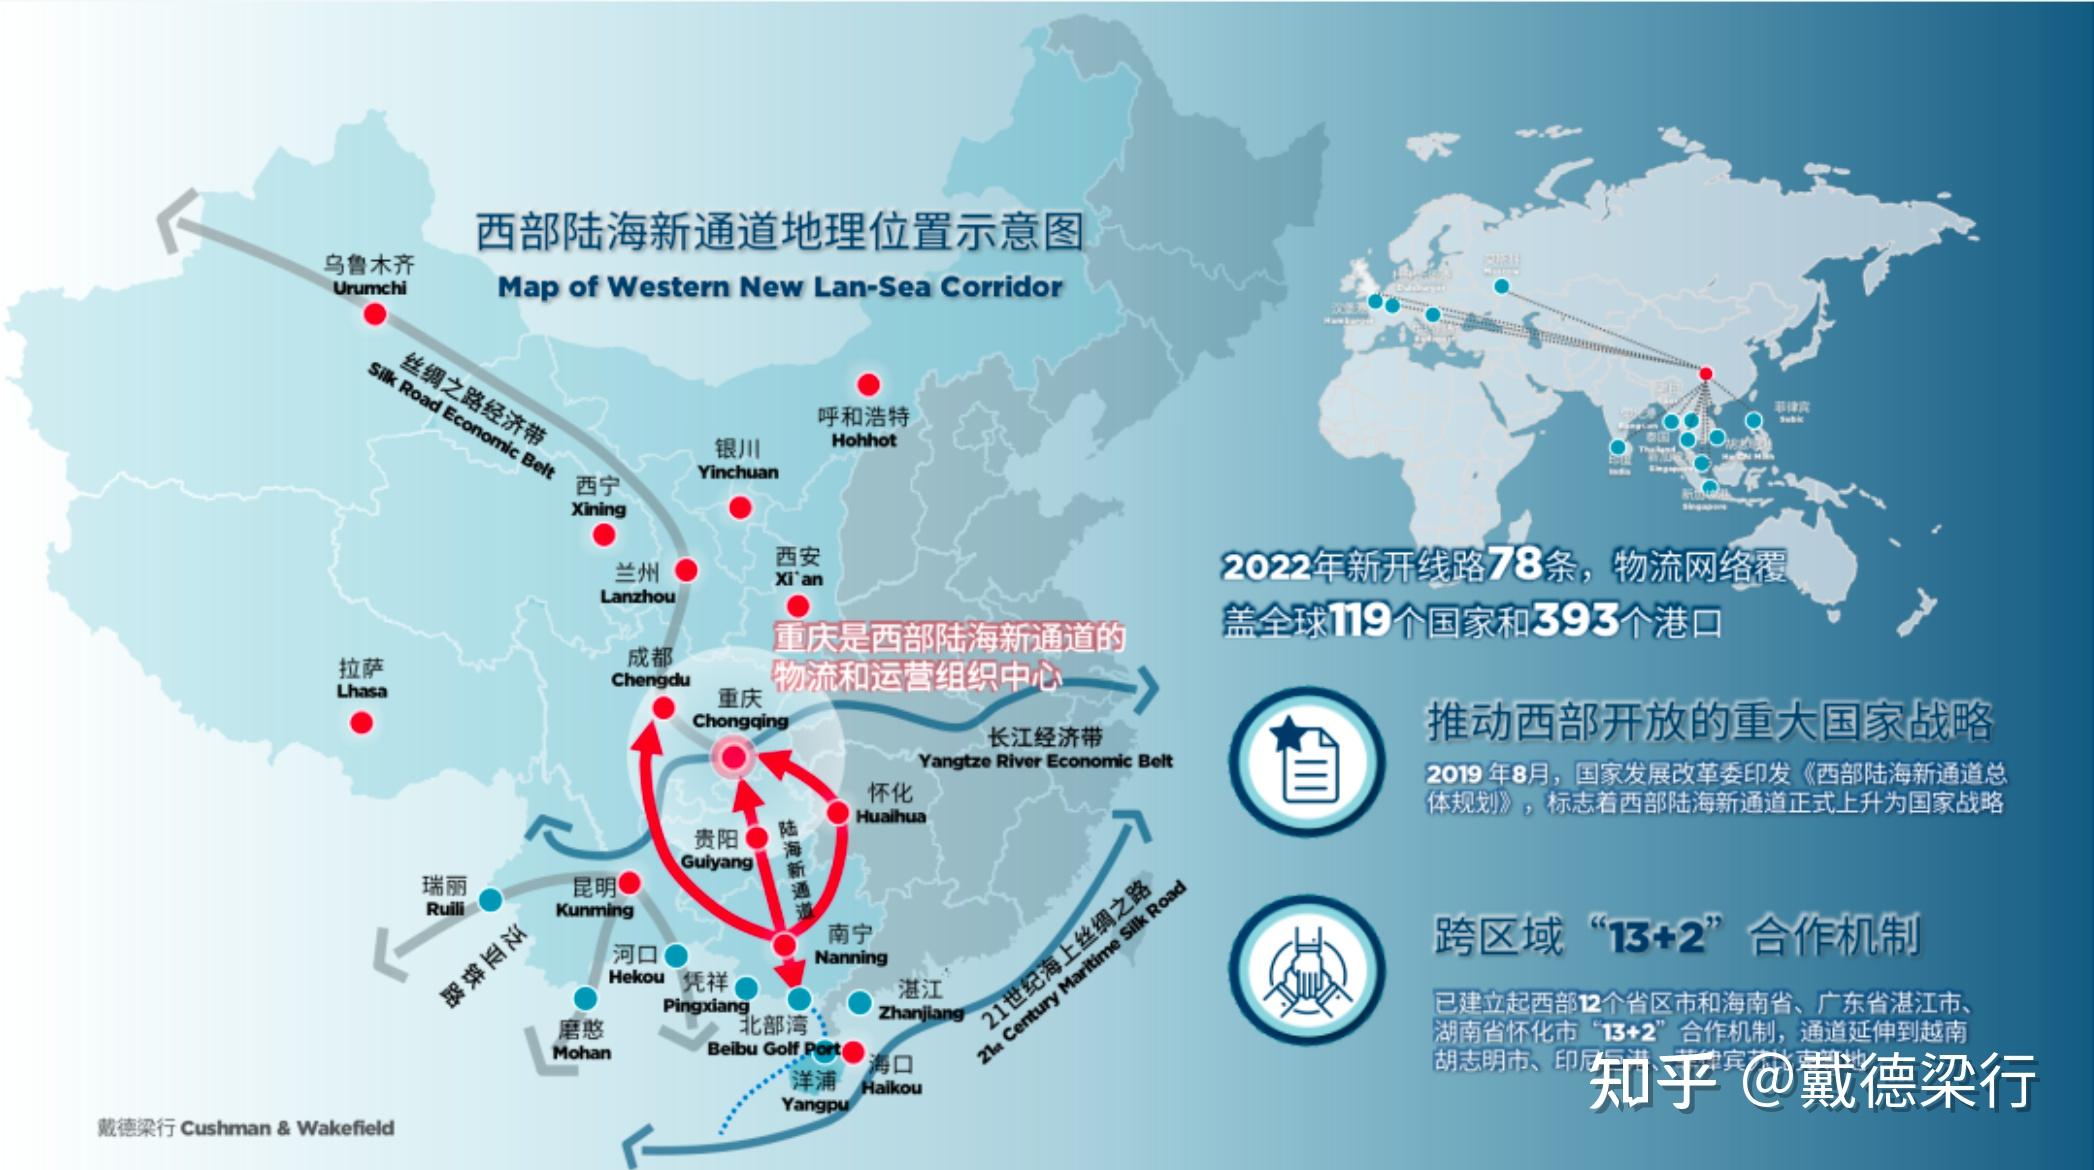 西部陆海新通道对中国西部来说,意味着什么? 